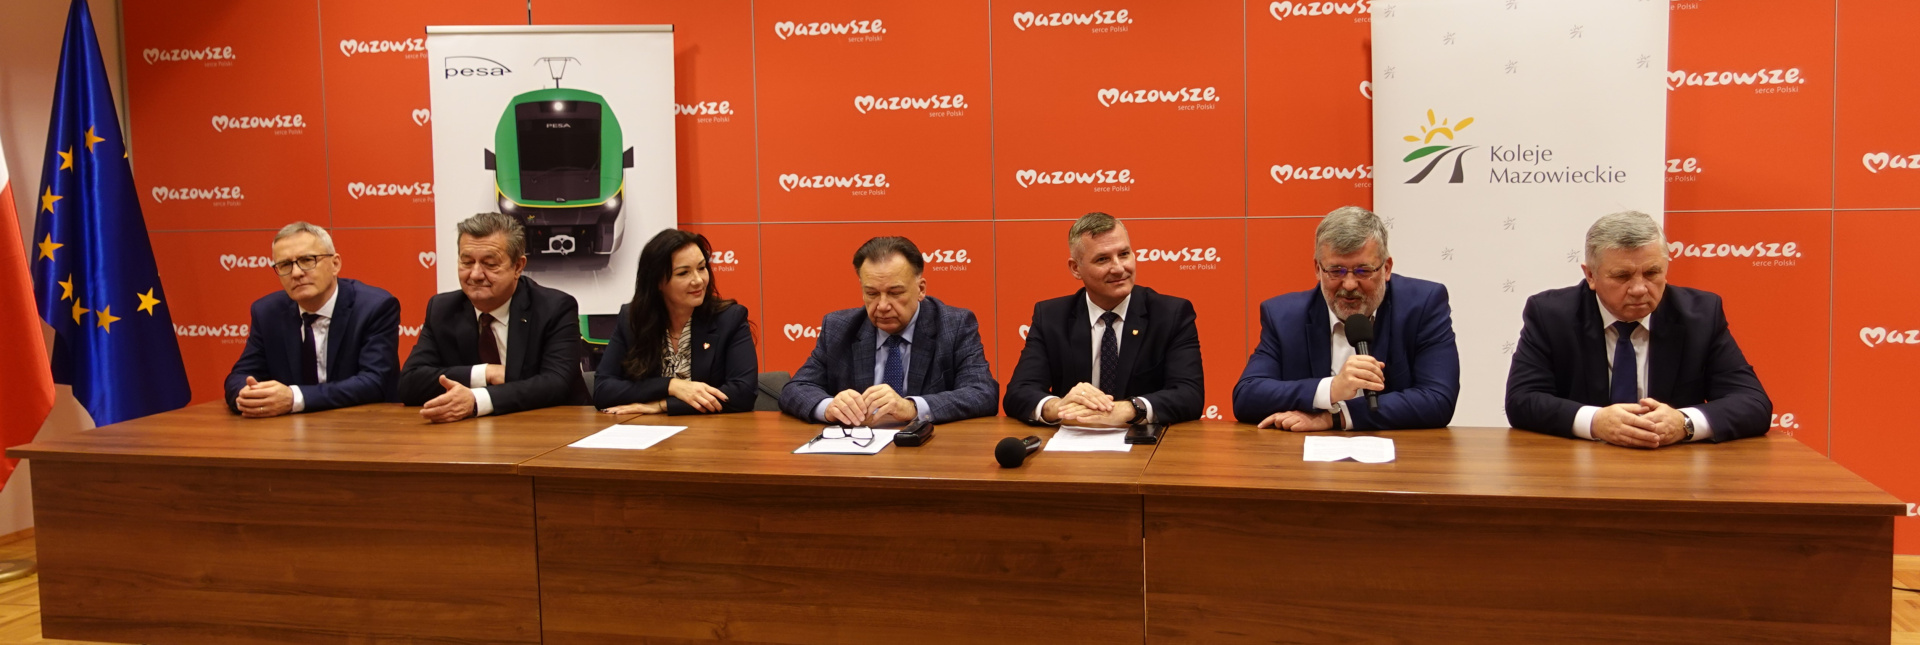 Przedstawiciele Urzędu Marszałkowskiego Województwa Mazowieckiego, Kolei Mazowieckich oraz PESA Bydgoszcz podczas podpisywania umowy na zakup 16 dwuczłonowych ezt